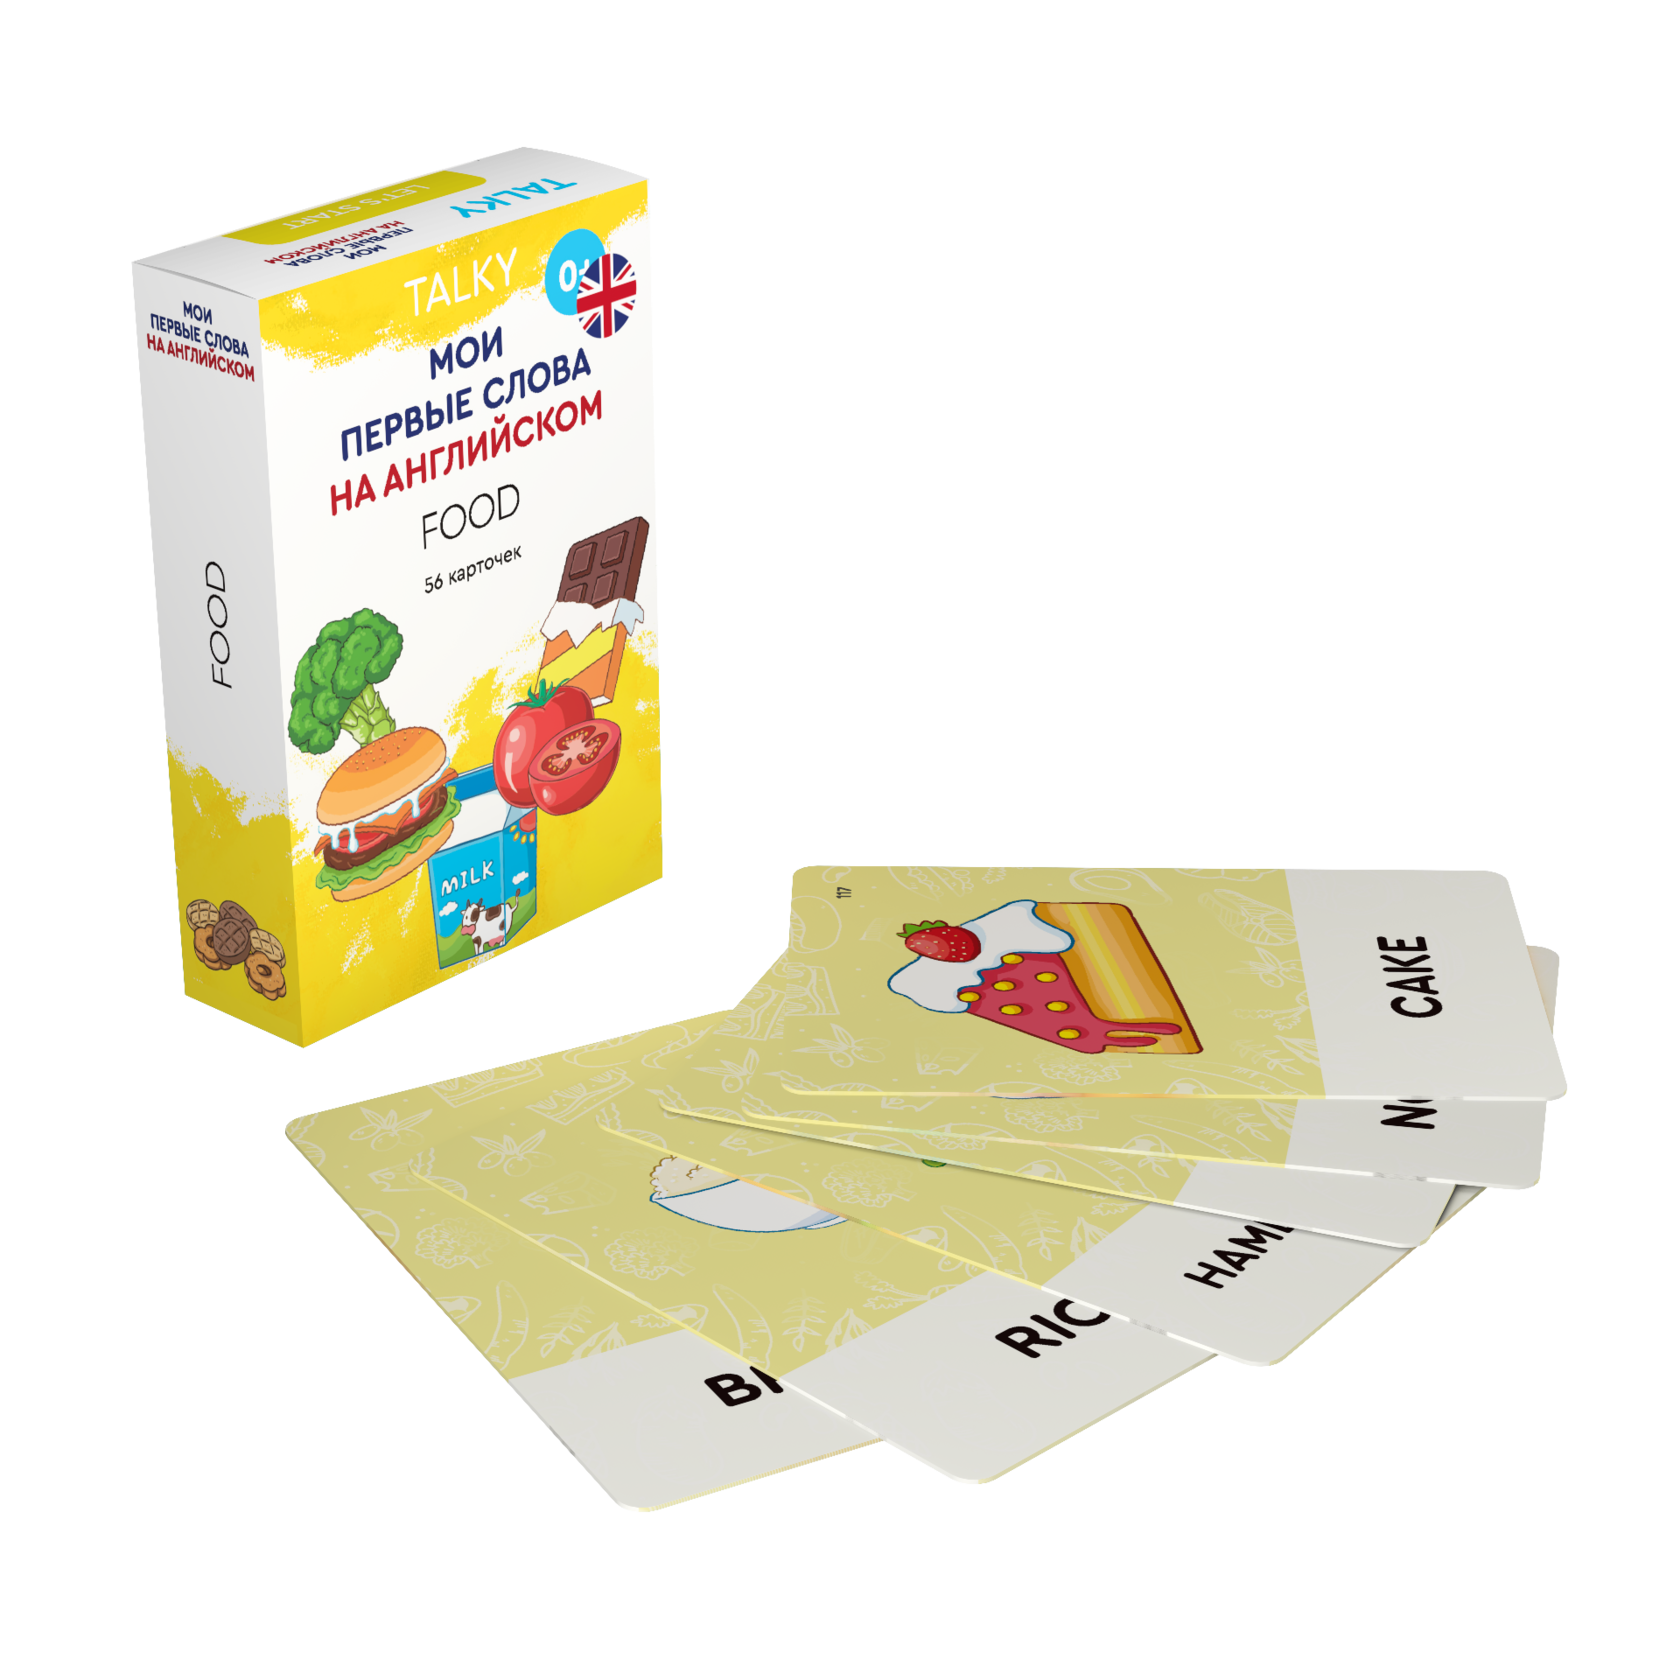 Развивающие карточки для детей LUMICUBE для TALKY, на англ. языке, еда, 56шт. KDTKE02-FOOD развивающие карточки для детей lumicube для talky 56шт kdtke01 family